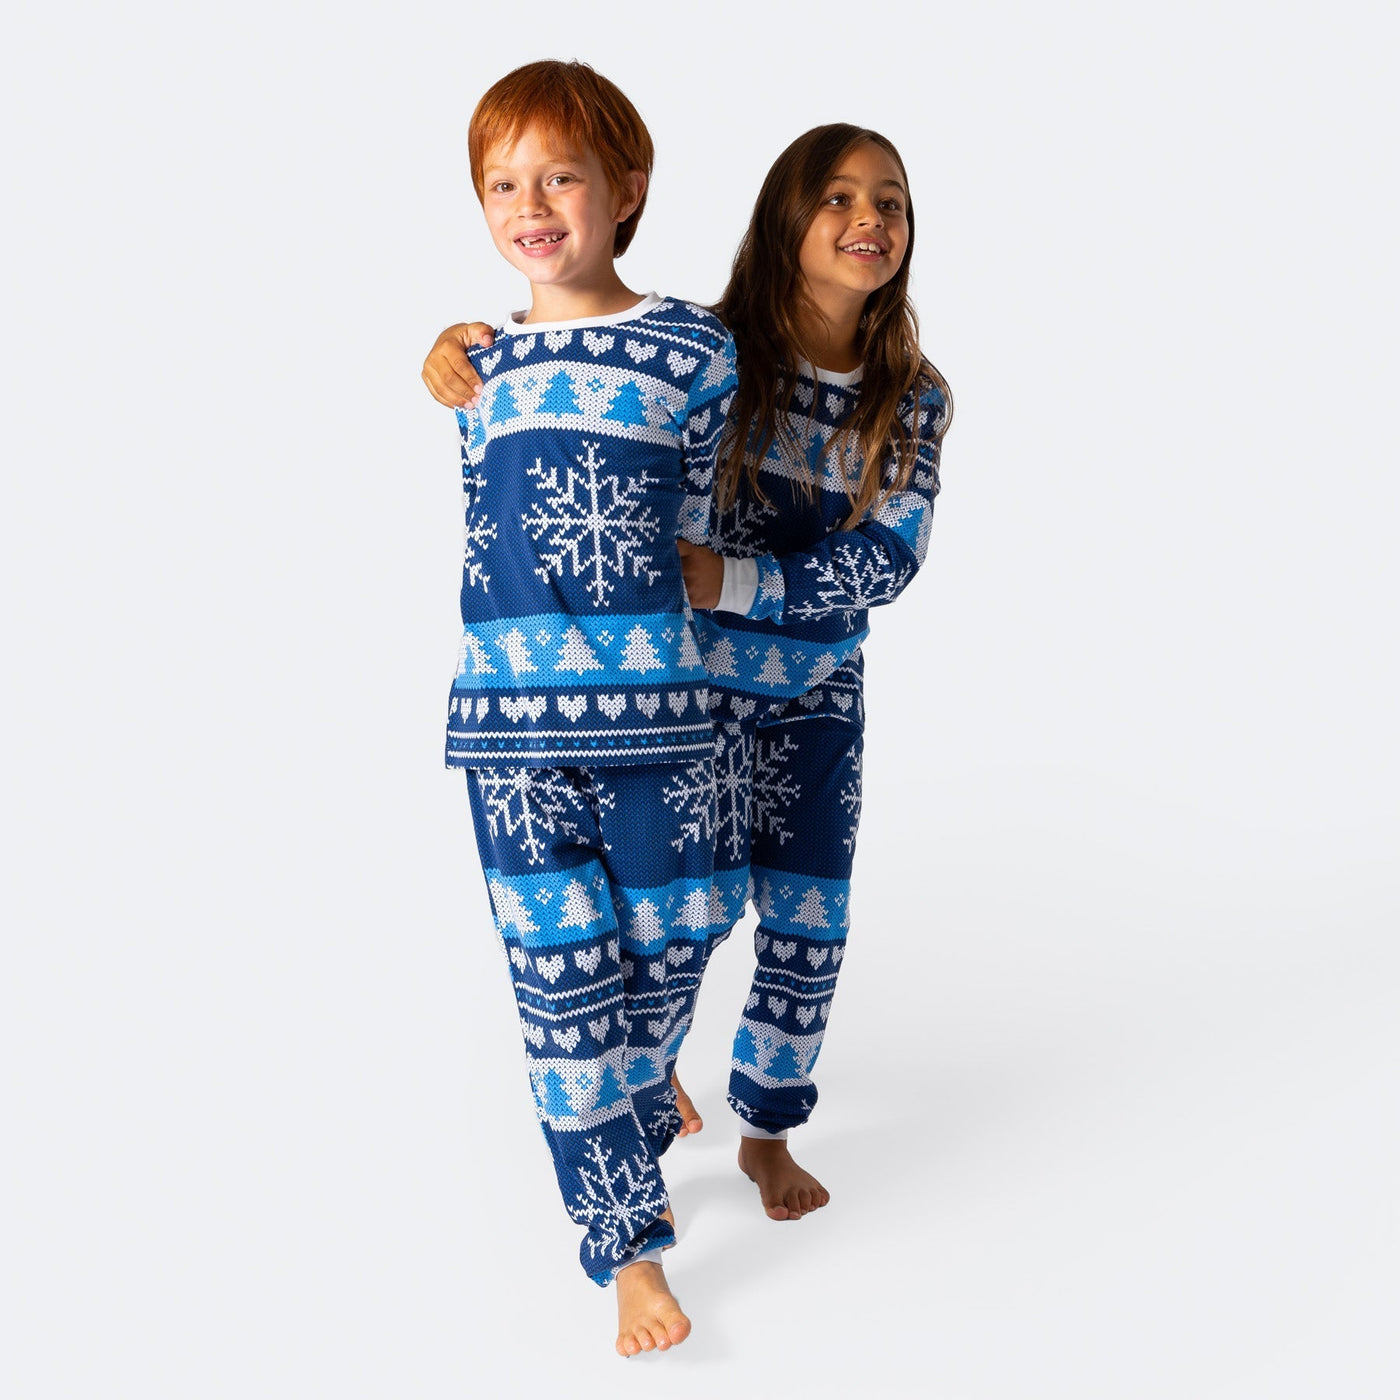 Gestrickter Blauer Pyjama Kinder